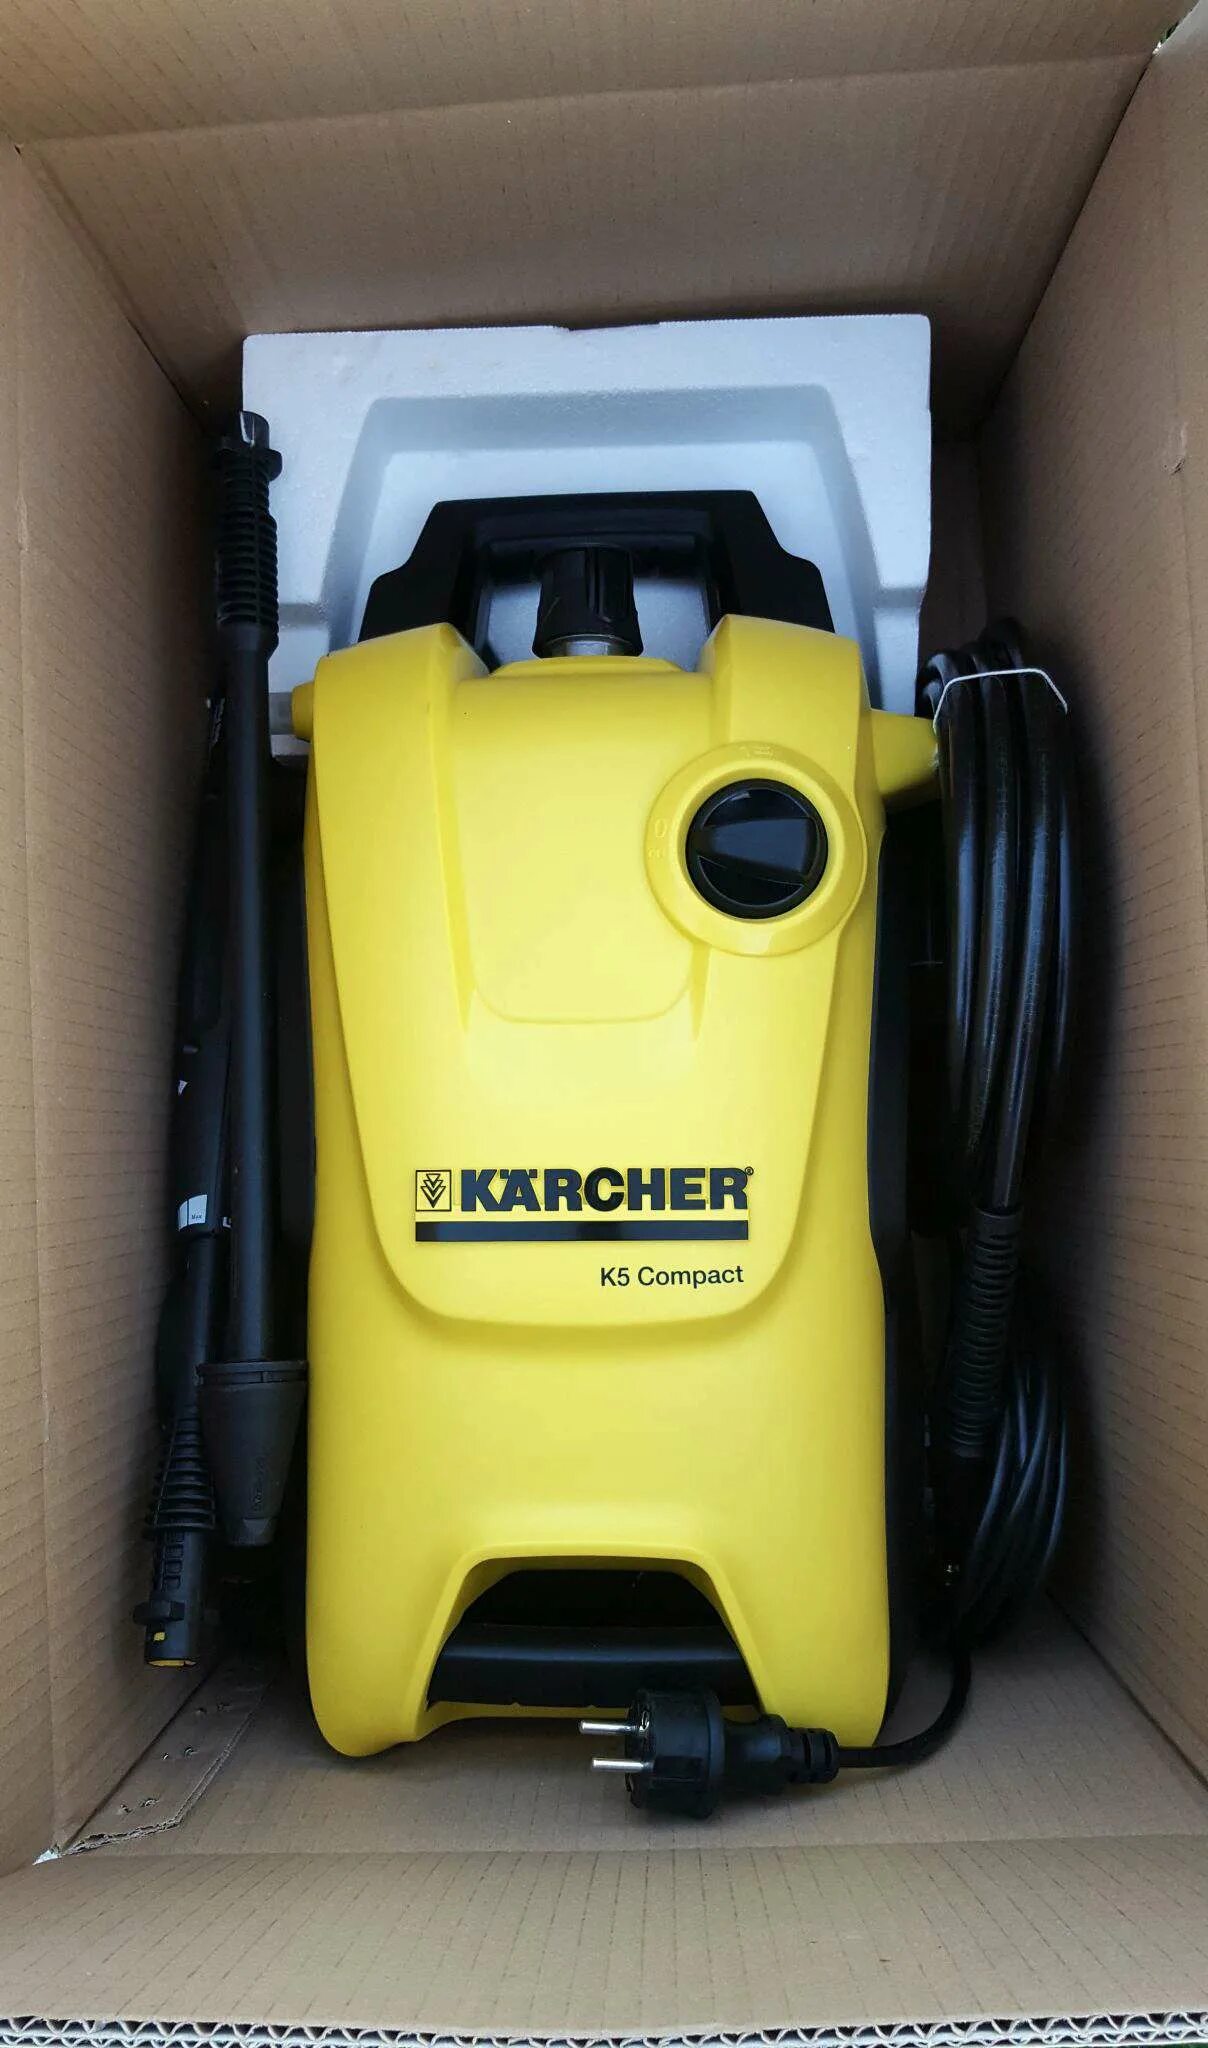 Давление мойки керхер 5.20. Мойка Karcher k 5 Compact. Минимойка Karcher к5 Compact. Мойка высокого давления Karcher к 5. 1.630-720.0 Karcher k 5 Compact.